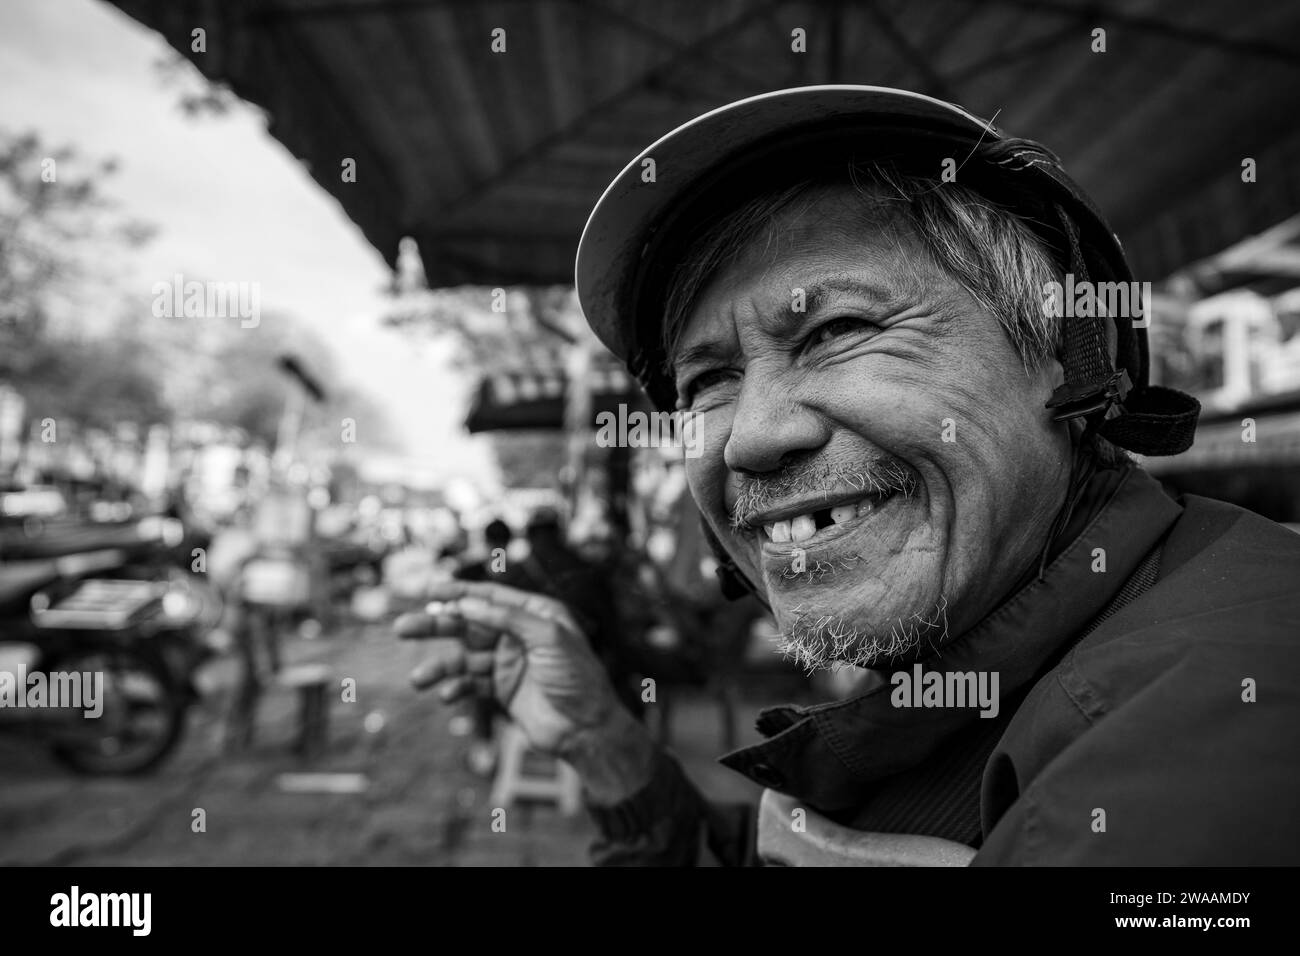 Un homme du Vietnam fume une cigarette Banque D'Images